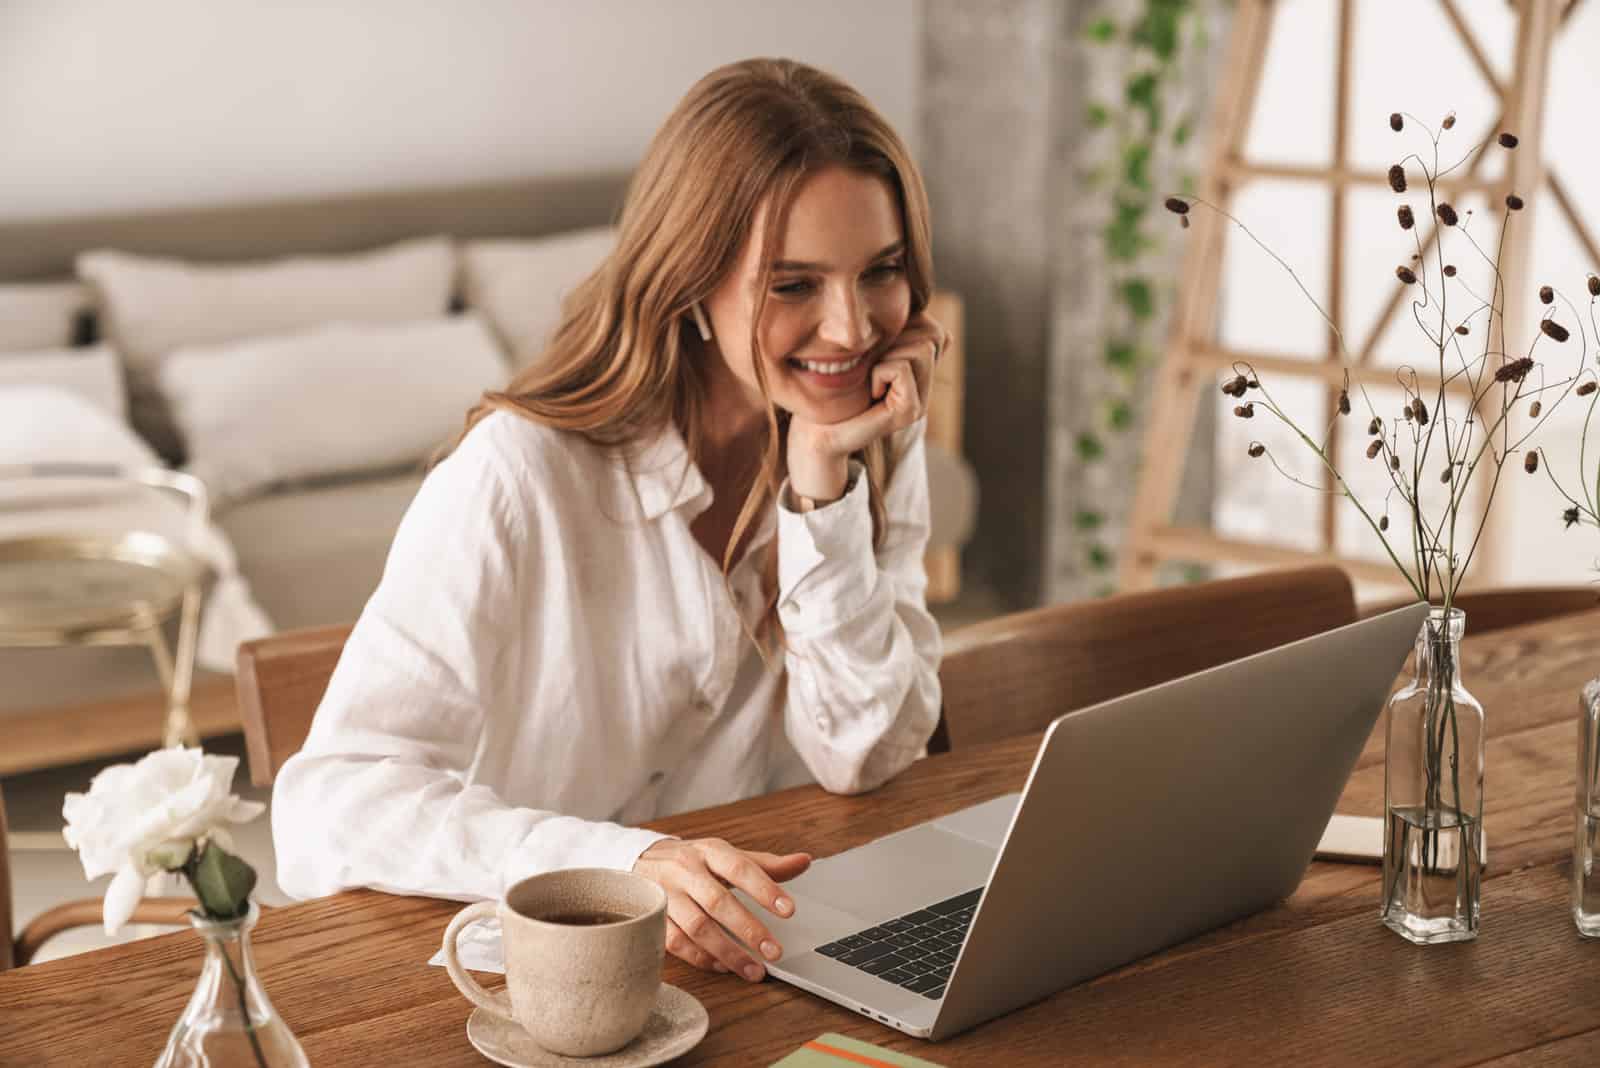 una donna sorridente dai capelli castani seduta dietro a un computer portatile